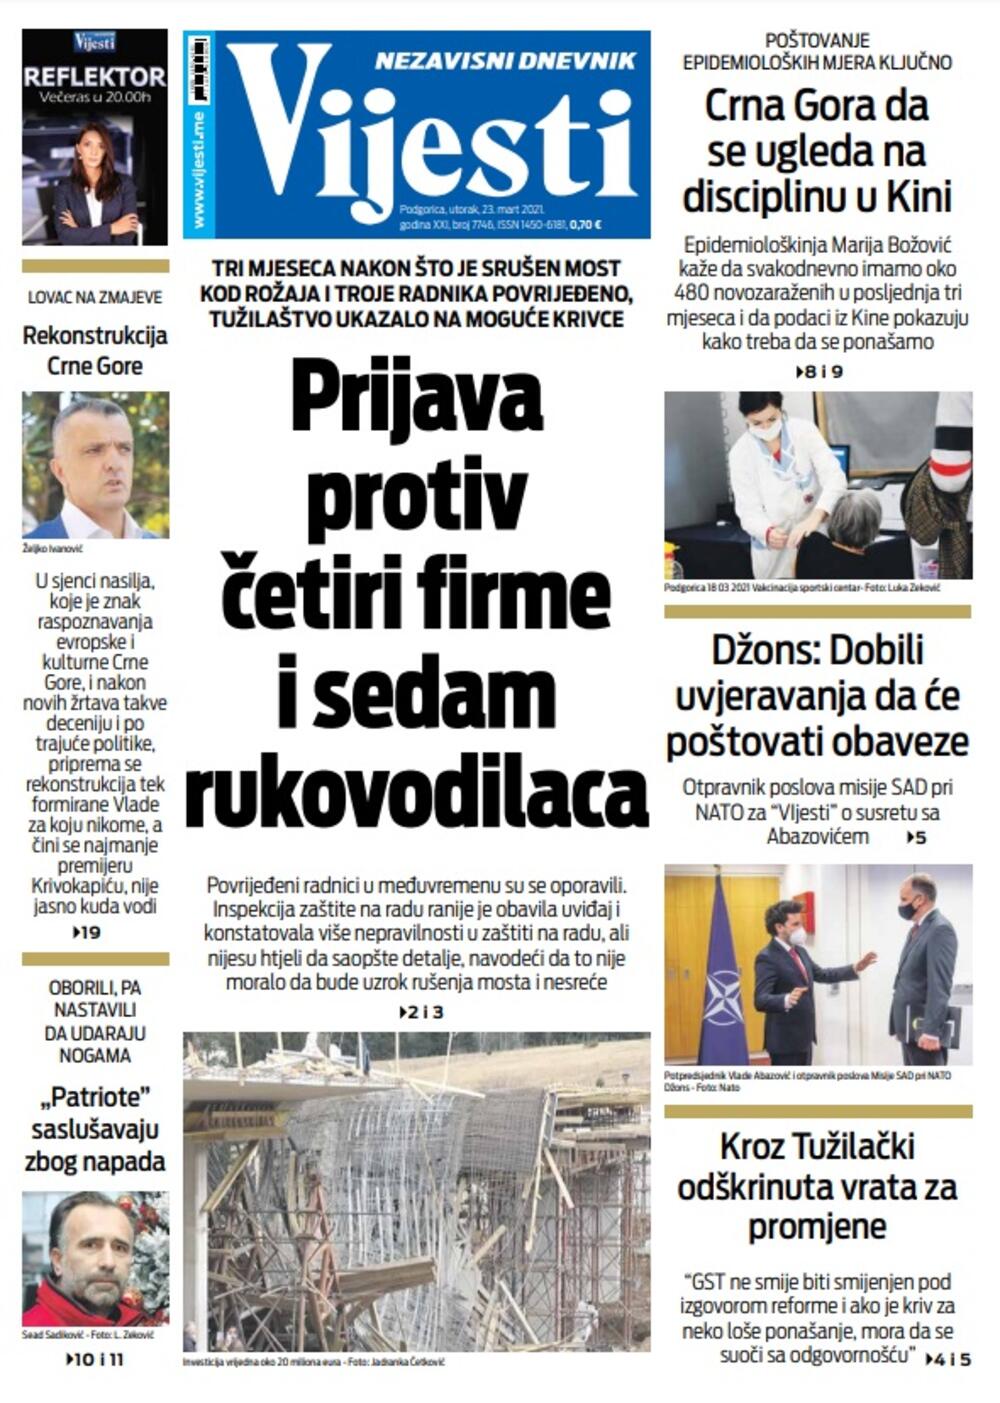 Naslovna strana "Vijesti" 23. mart 2021., Foto: Vijesti